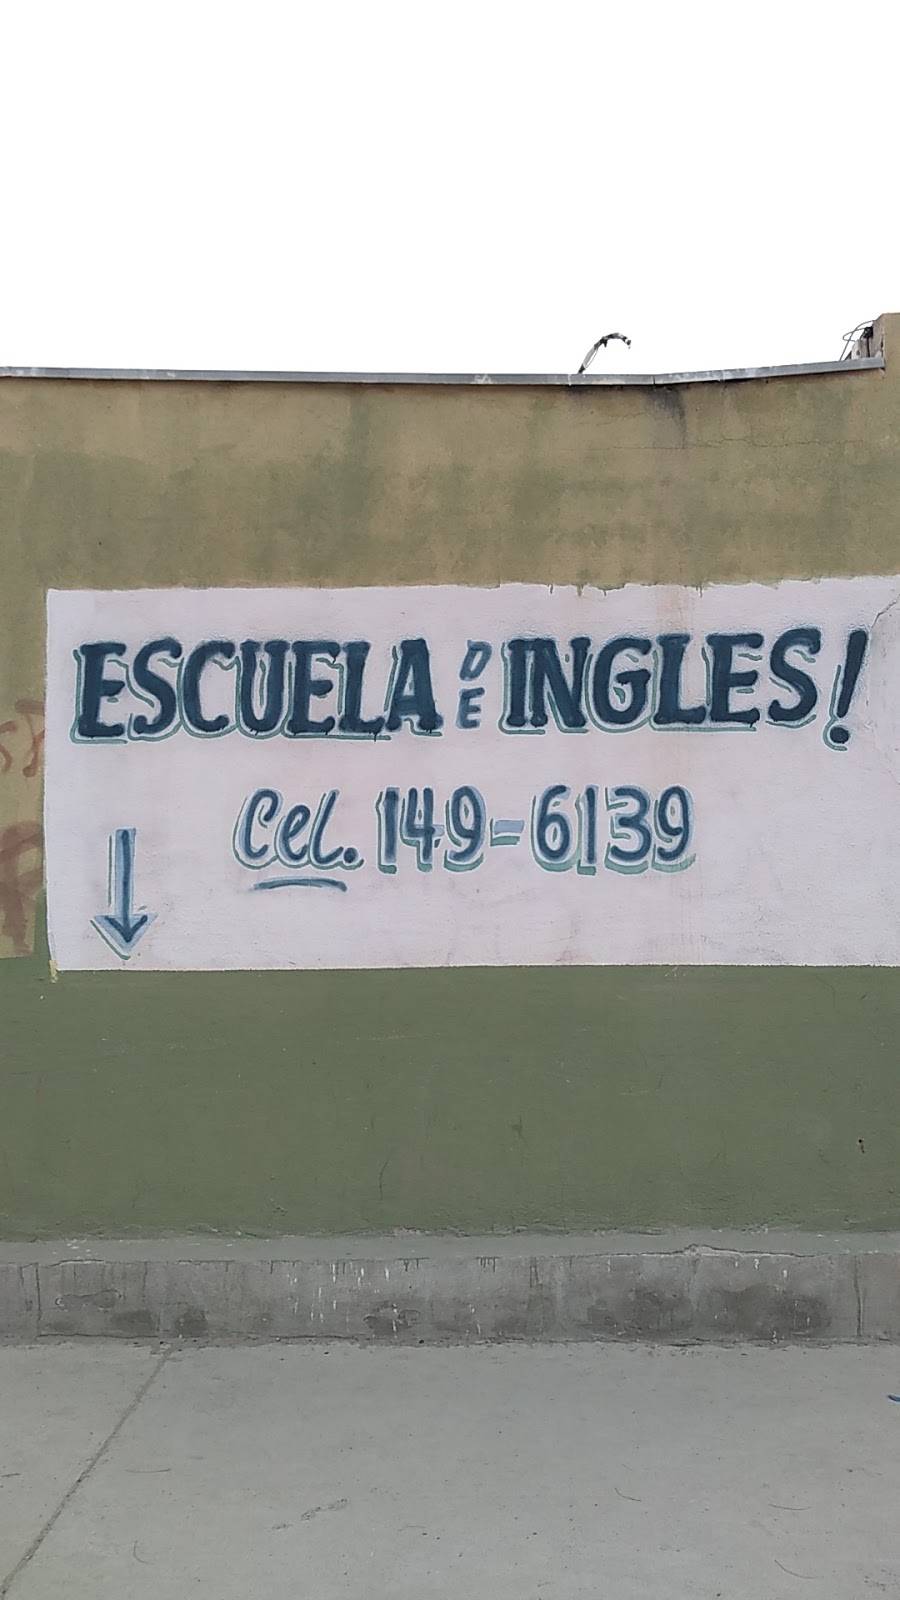 Escuela de inglés Américana | Calle Hacienda del Sol 10345 Col, Hacienda de Las Torres, Universidad, 32575 Cd Juárez, Chih., Mexico | Phone: 656 149 6139